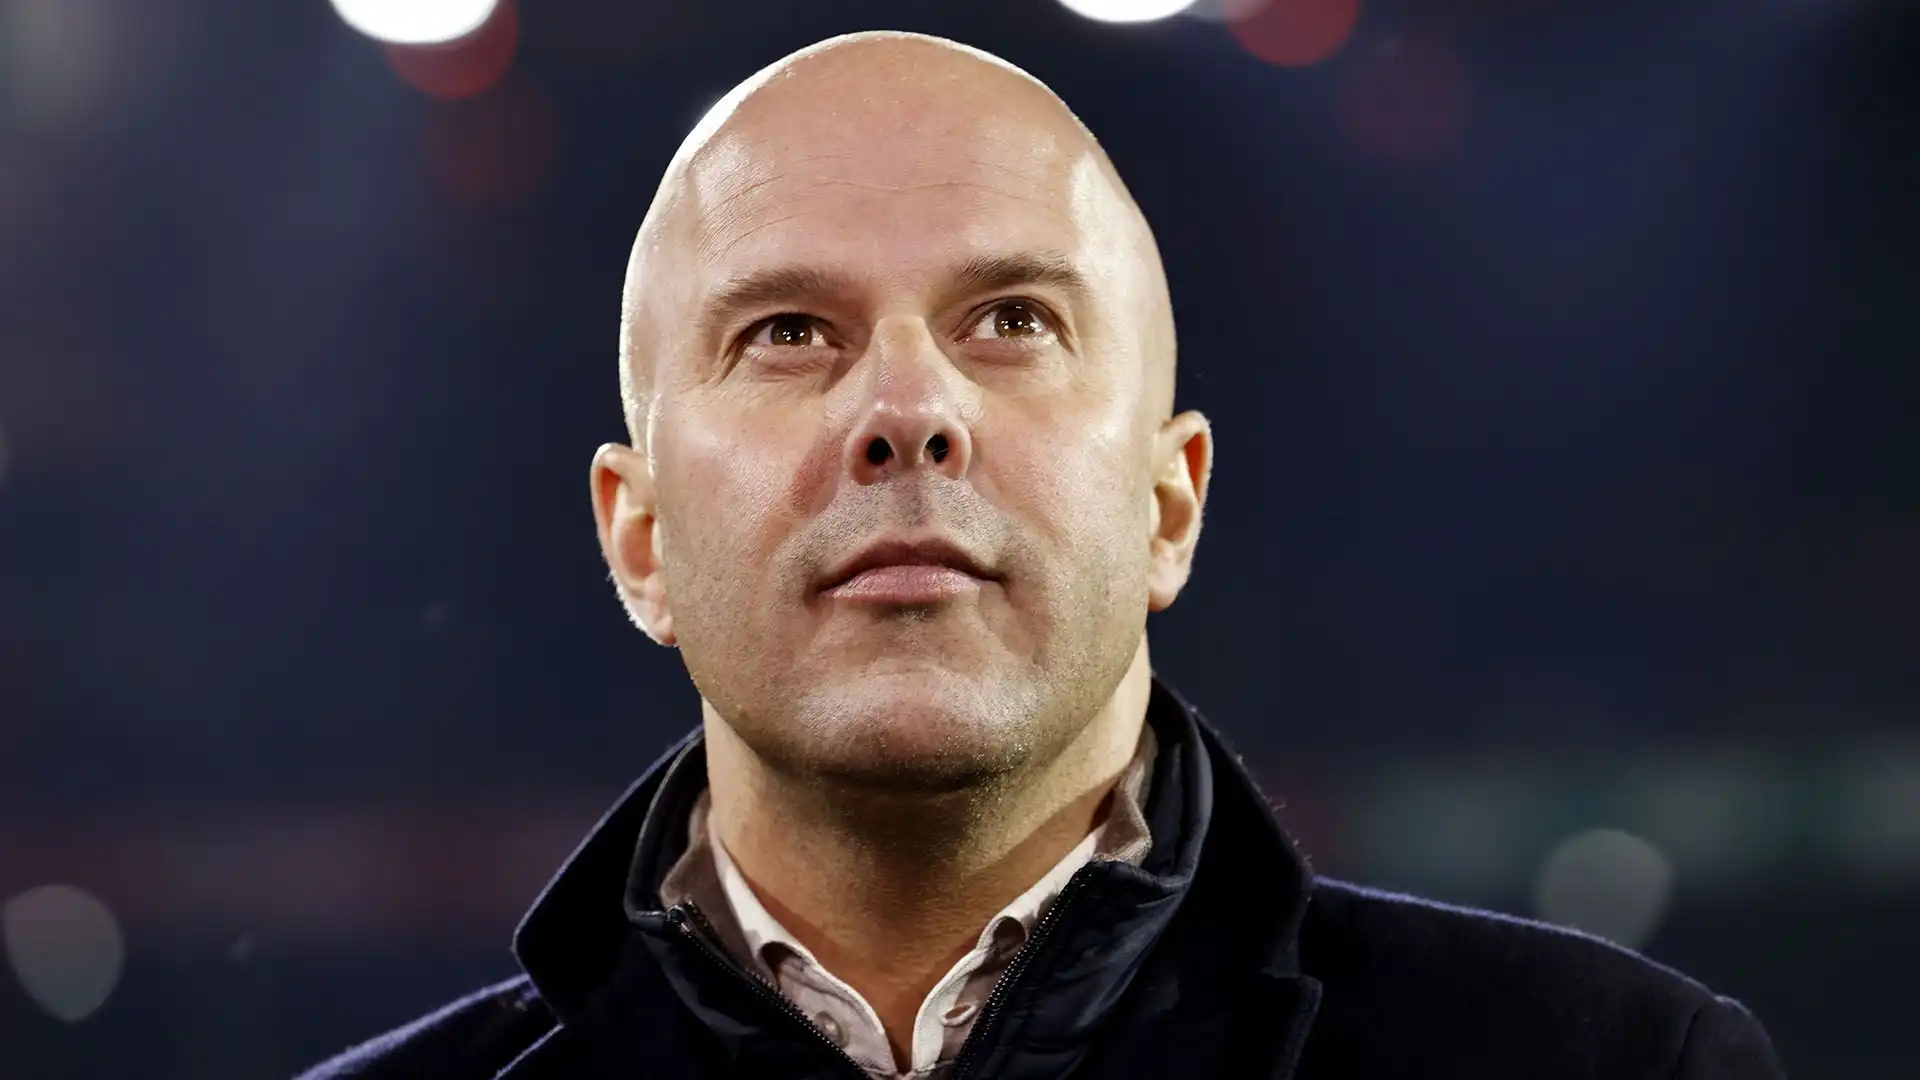 Il tecnico olandese ha vinto il campionato con il Feyenoord nelle ultime due stagioni